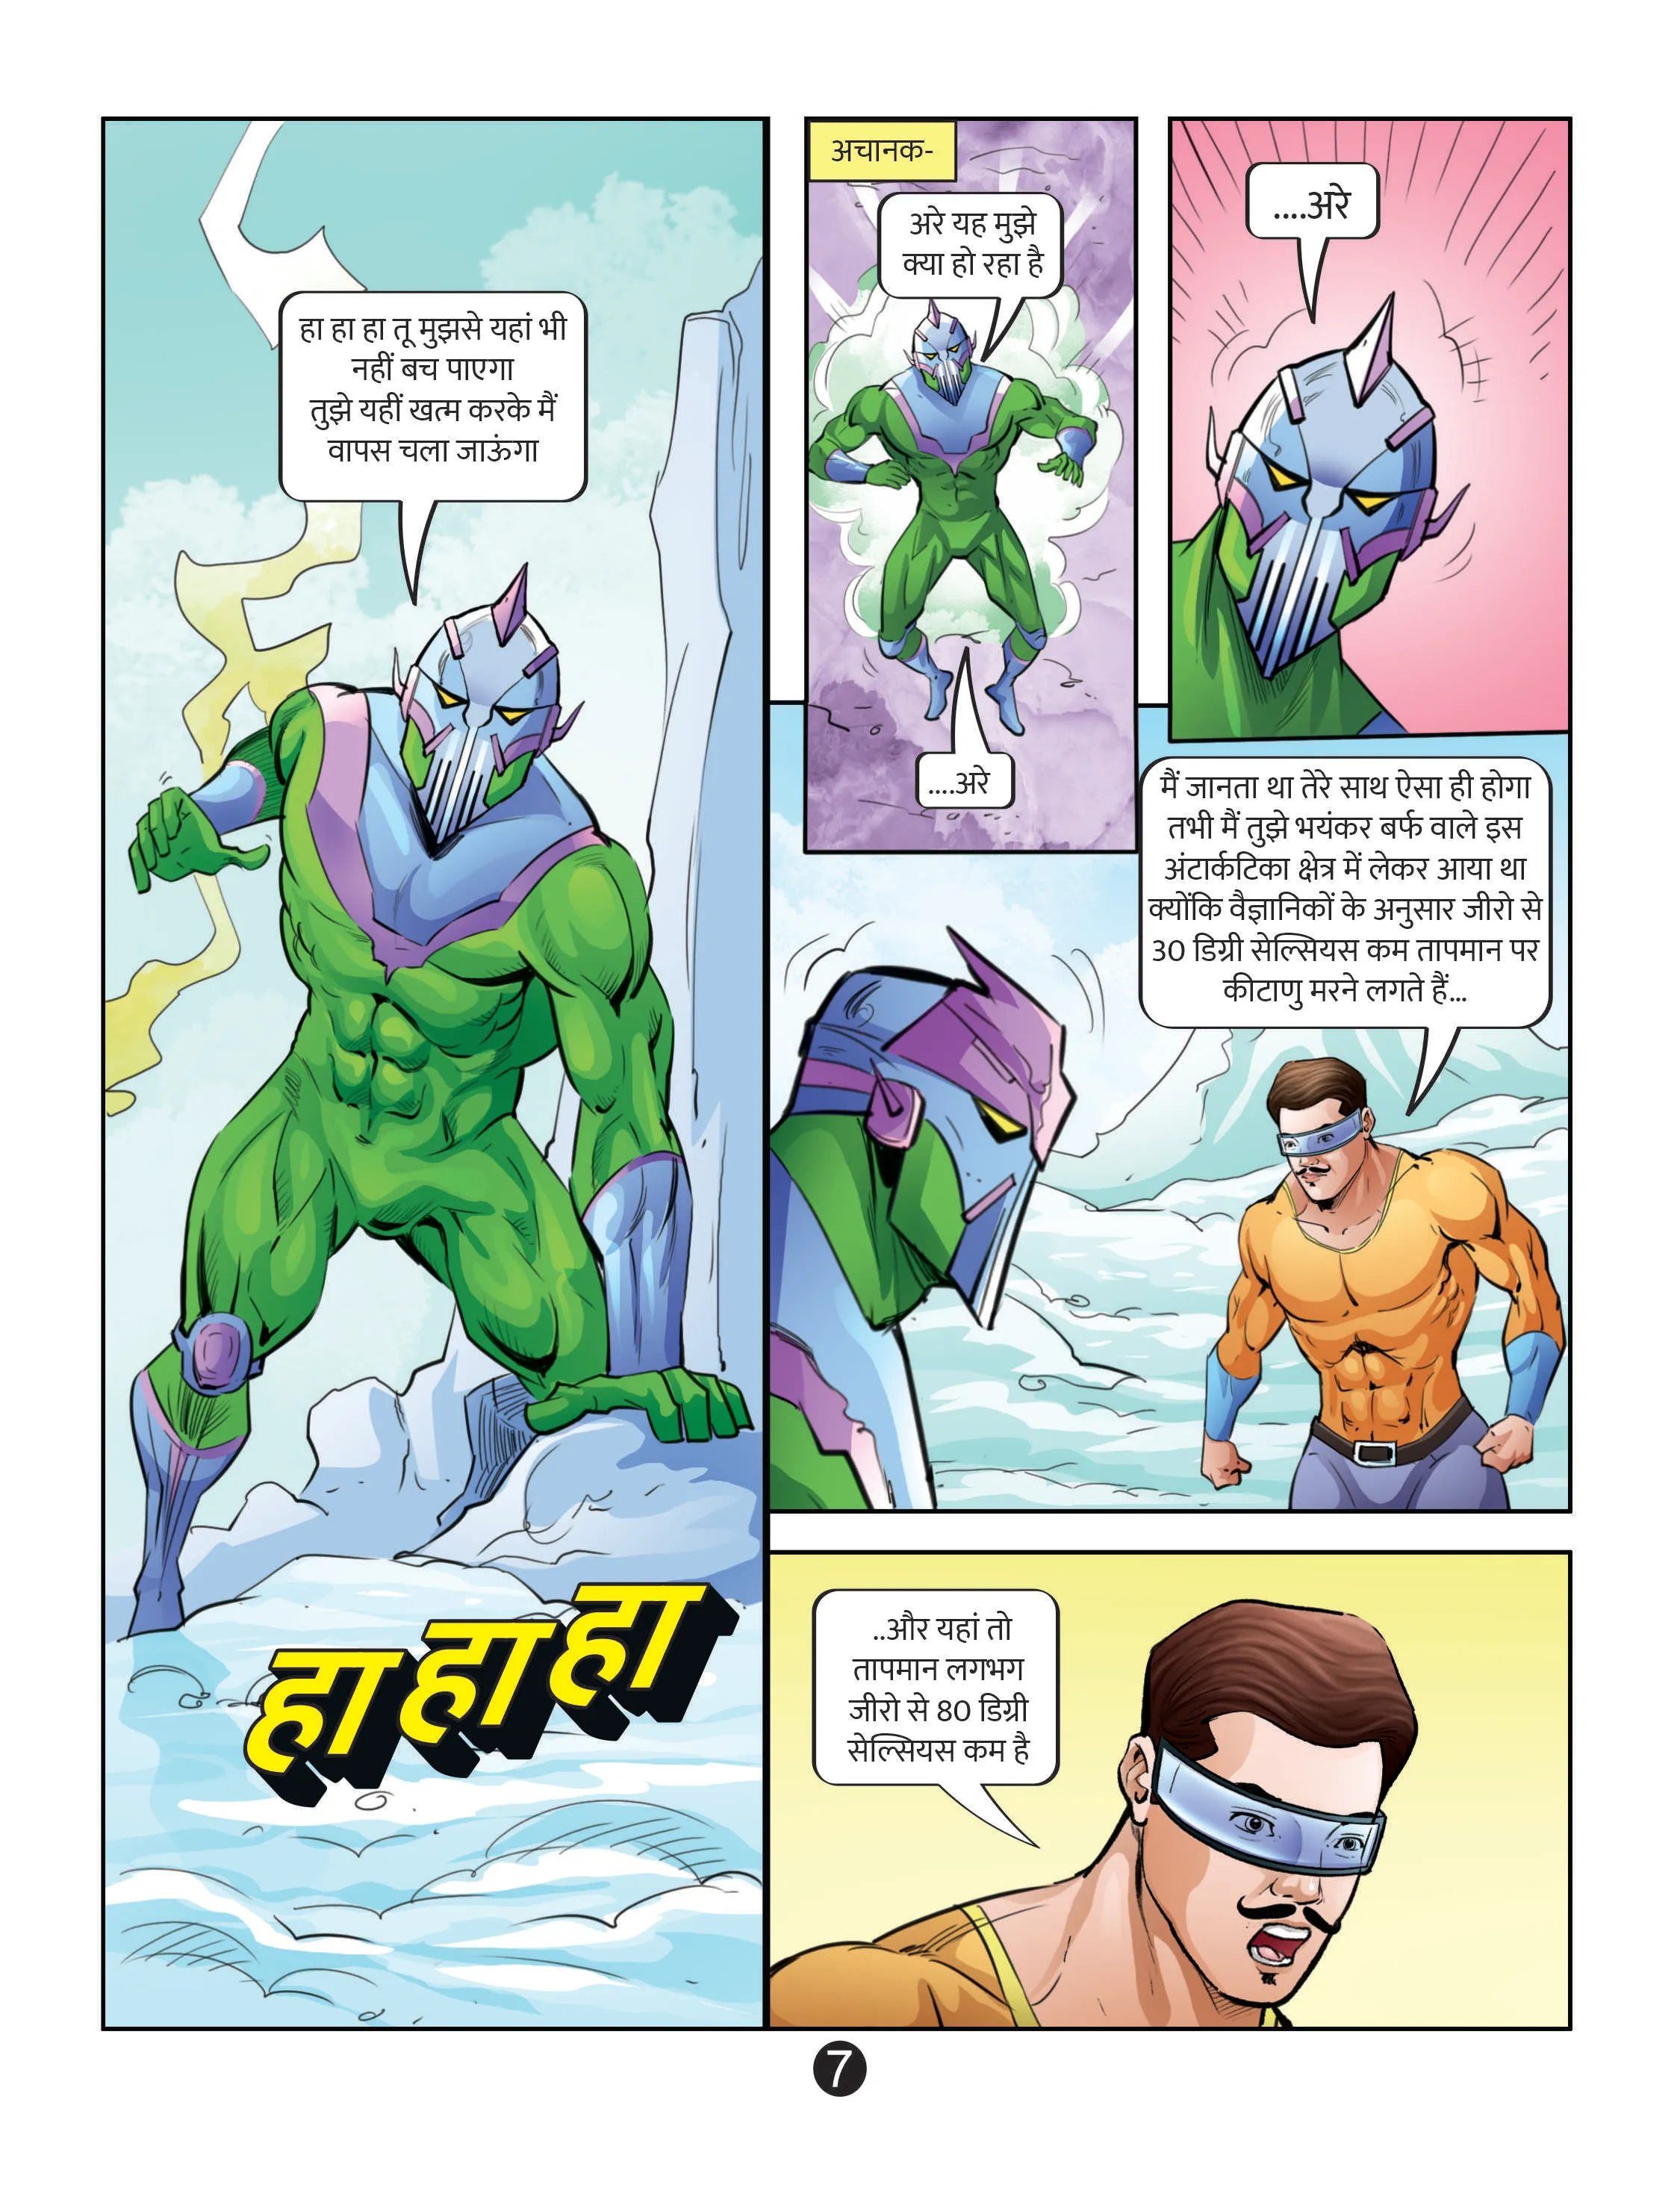 Lotpot E-Comics cartoon character Janbaaz Deva